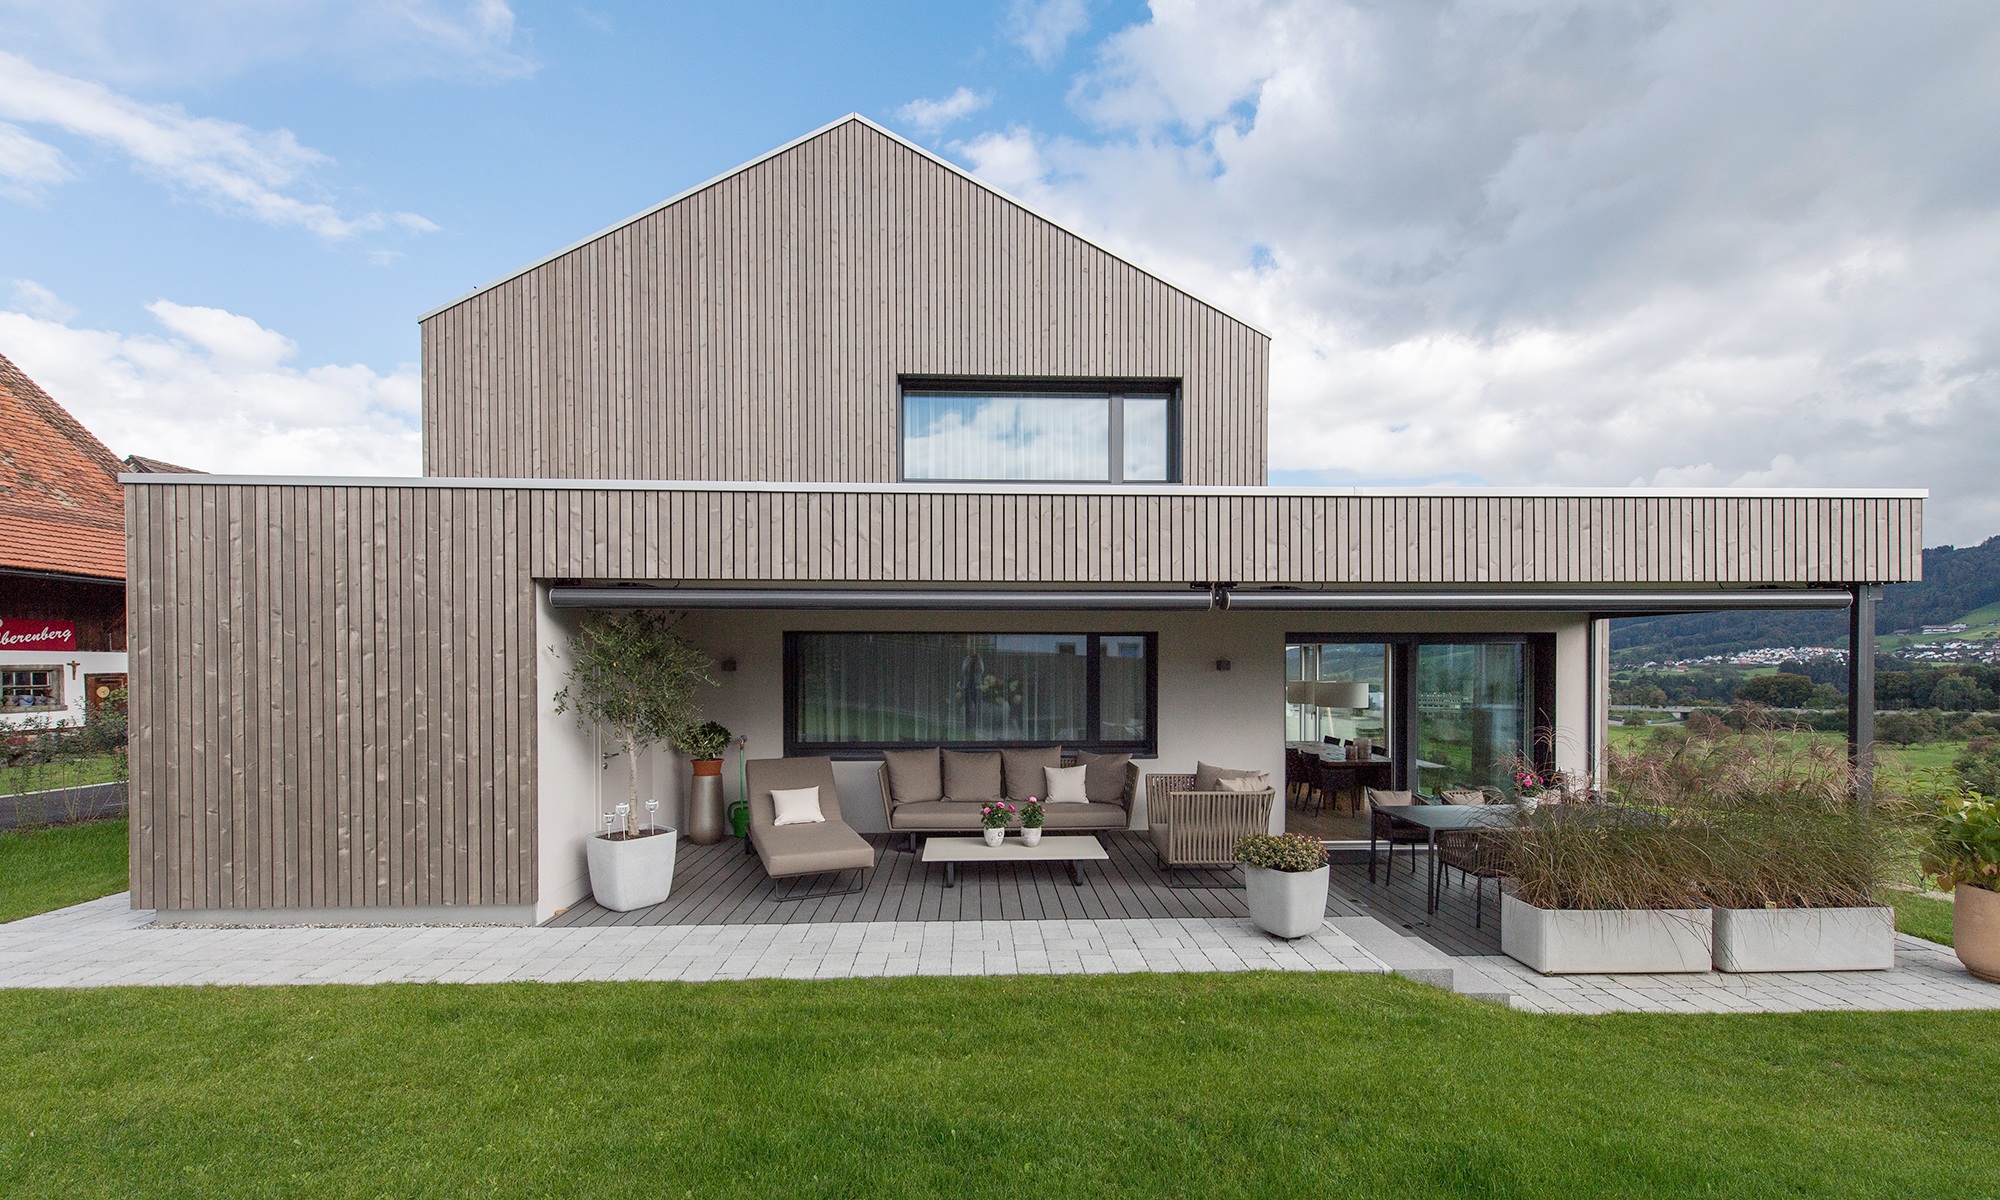 Aufnahme zeigt das Einfamilienhaus mit Seeblick sowie dessen überdachten Sitzplatz im Gartenbereich bei schönem Wetter